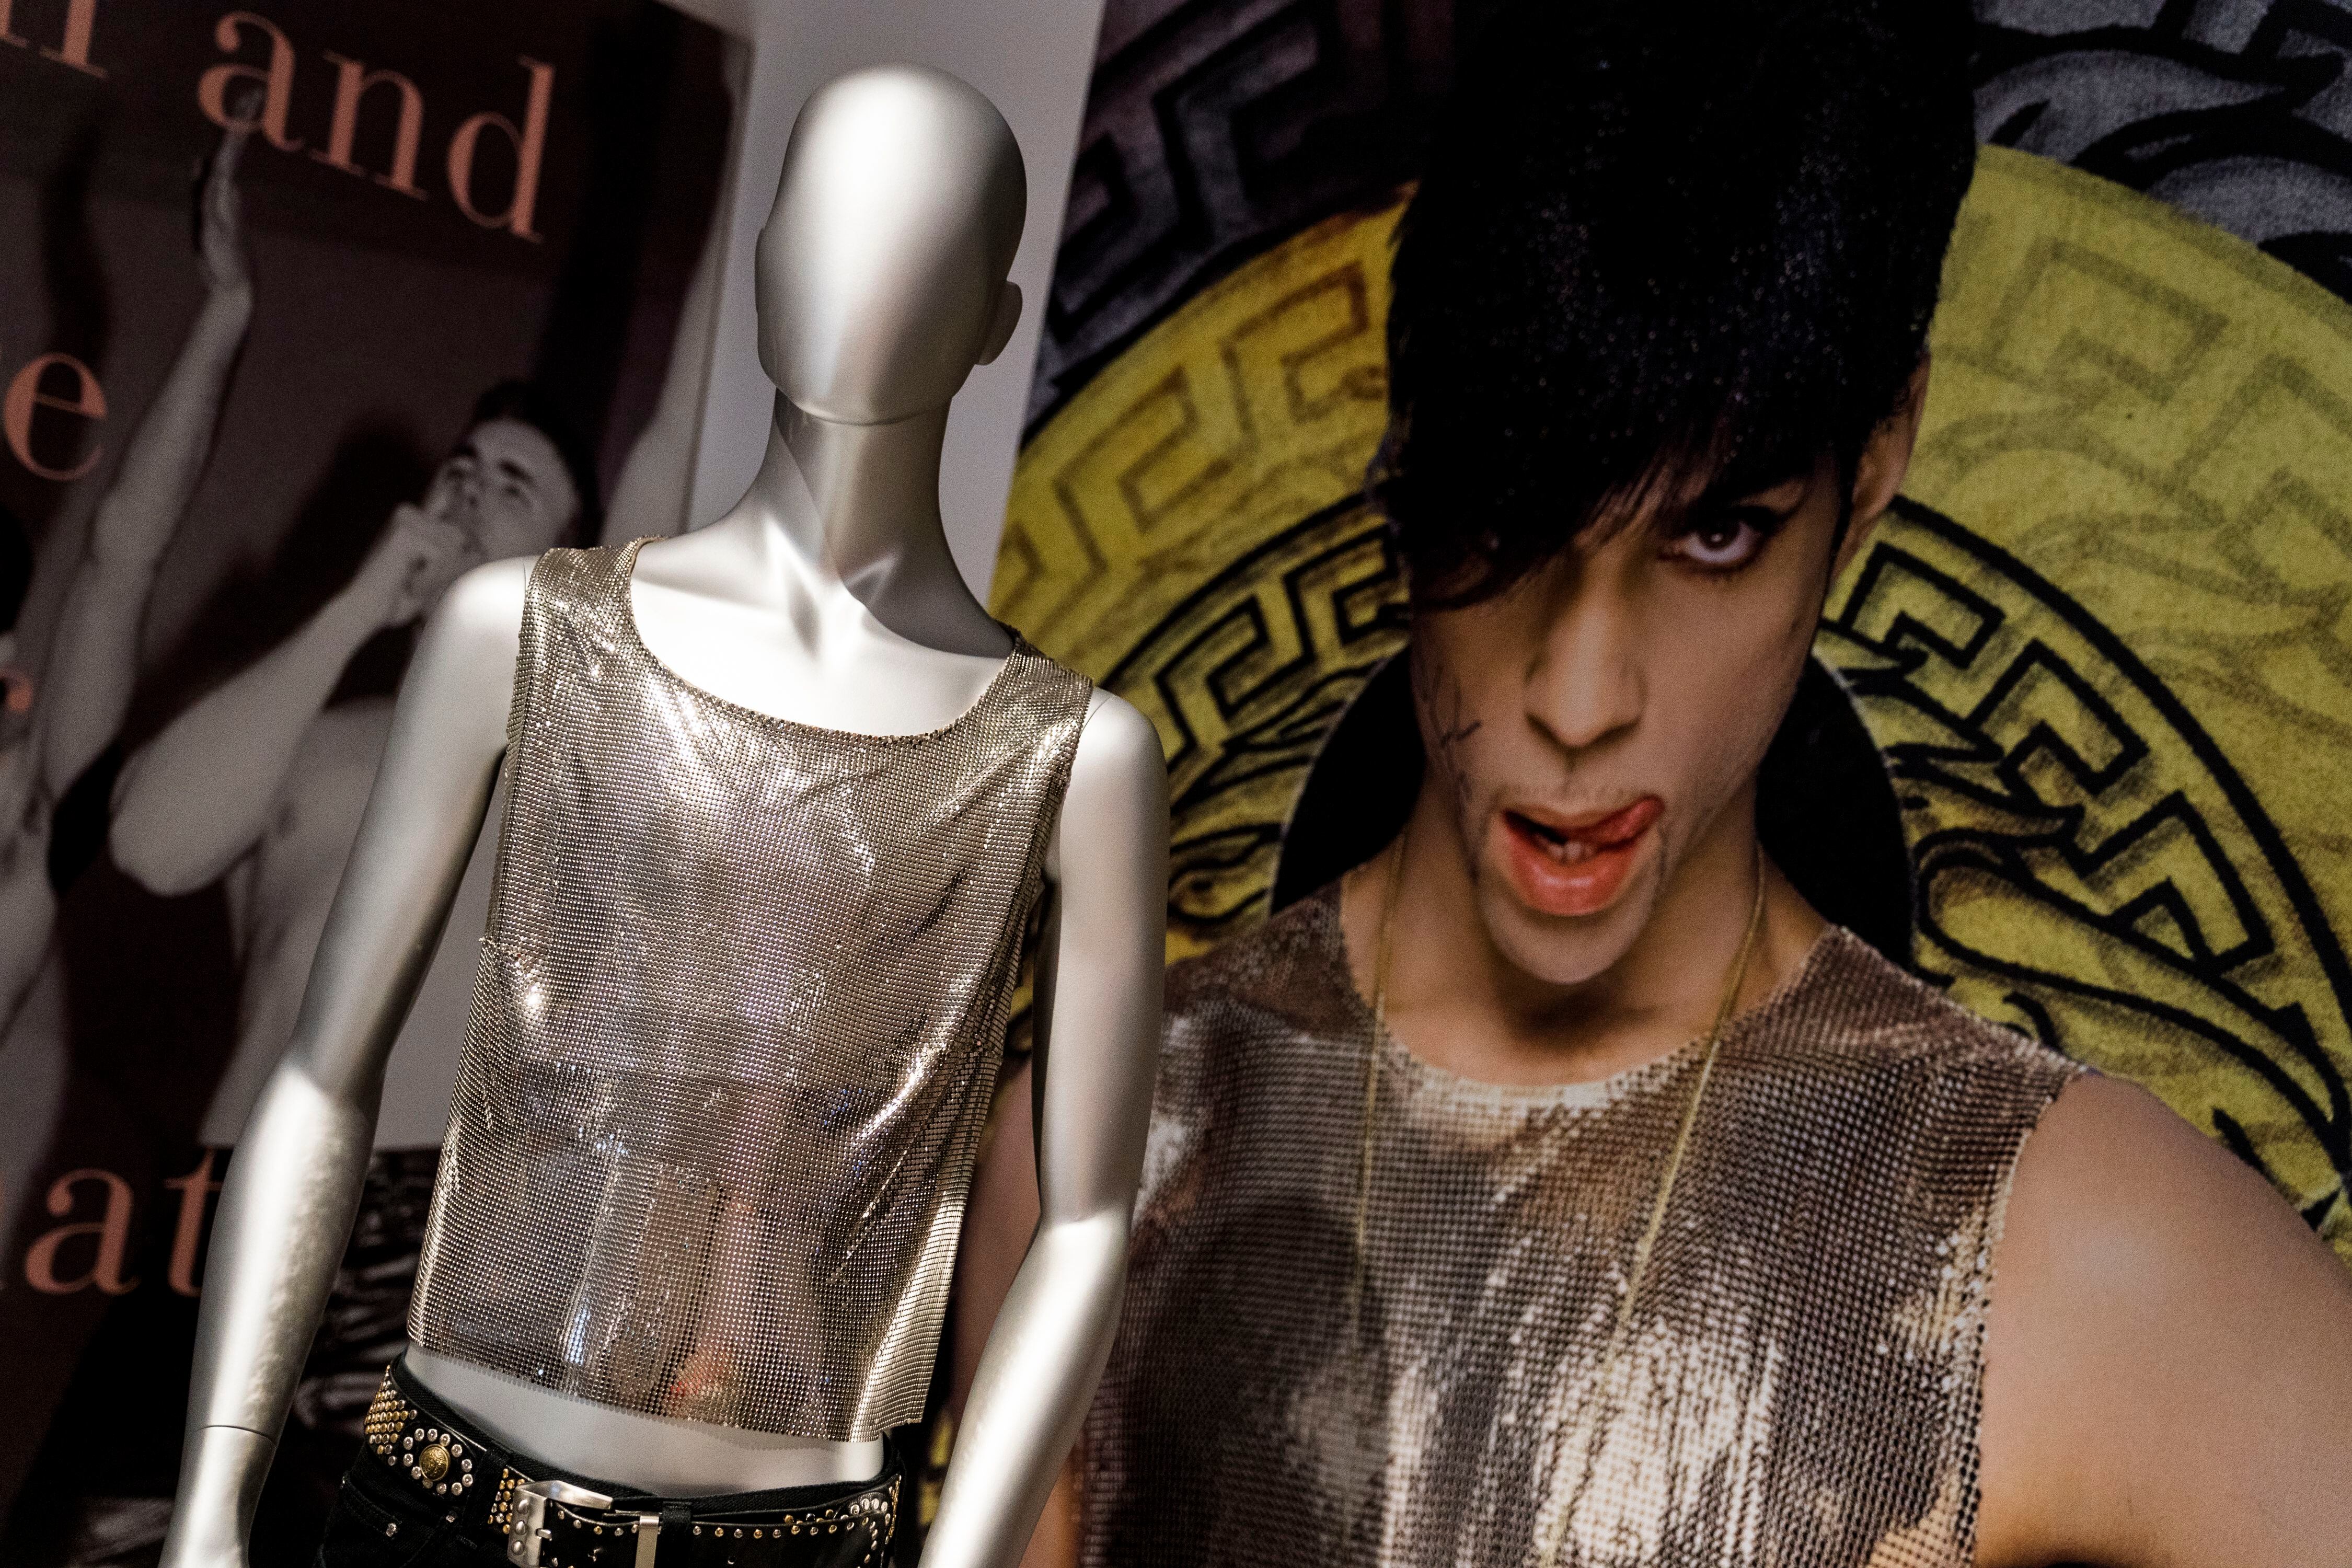 Prince fue uno de los músicos que luciría alguno de los modelos de Versace. En la imagen, una camiseta que llevó el cantante, amigo del diseñador y de la familia, en una foto promocional. “Versace Fue el primero en llevar a famosos, como los cantantes Elton John o Madonna, a la primera fila de sus desfiles